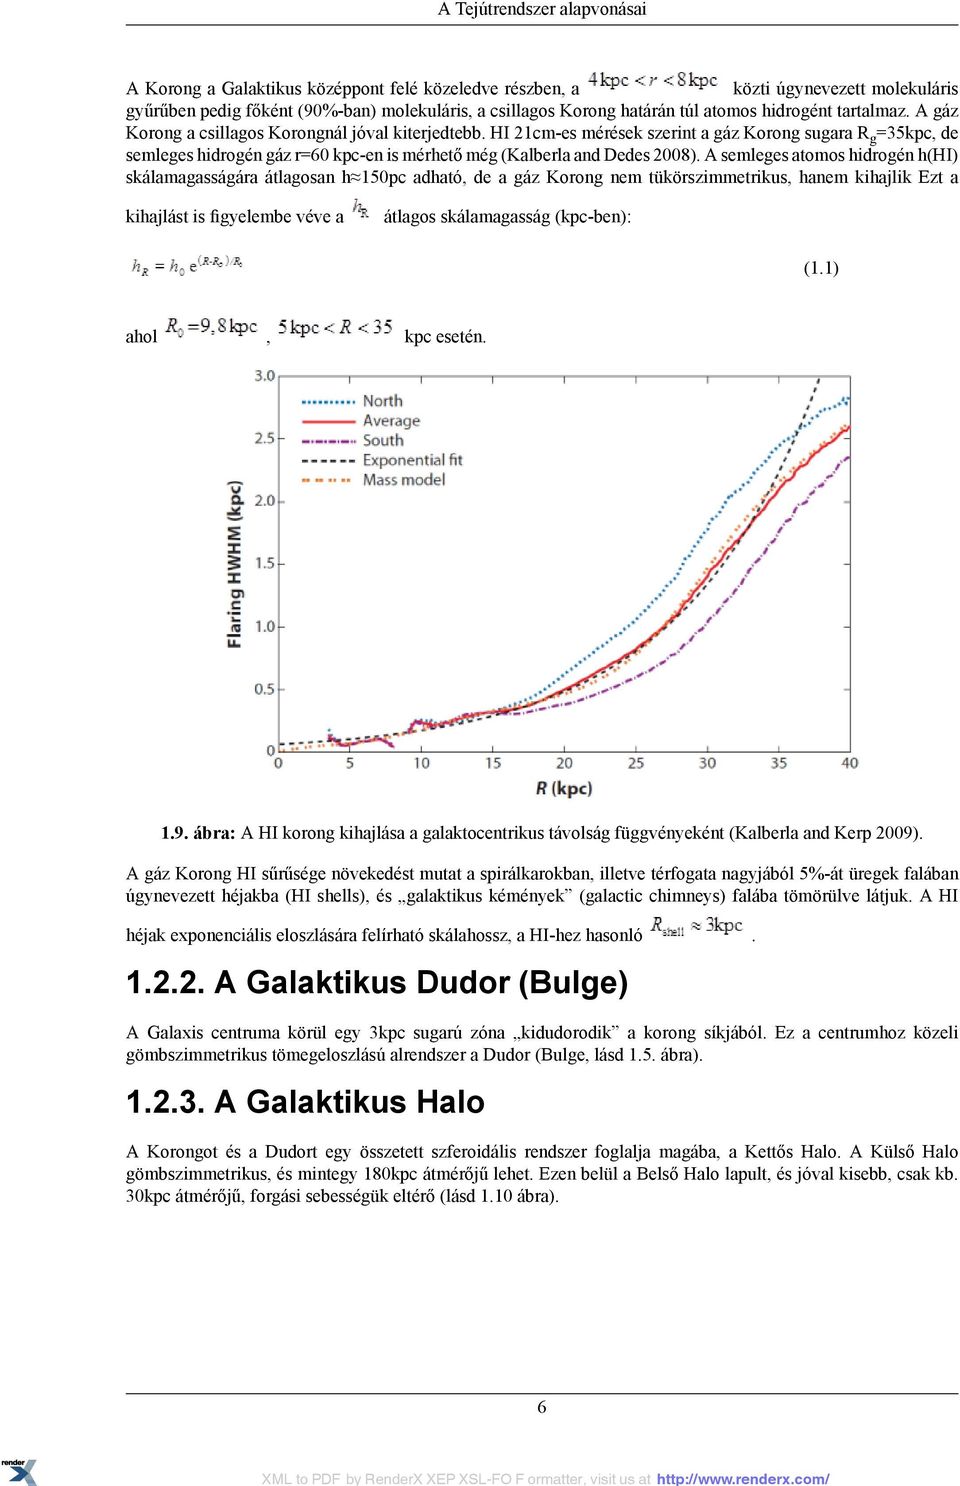 HI 21cm-es mérések szerint a gáz Korong sugara R g =35kpc, de semleges hidrogén gáz r=60 kpc-en is mérhető még (Kalberla and Dedes 2008).